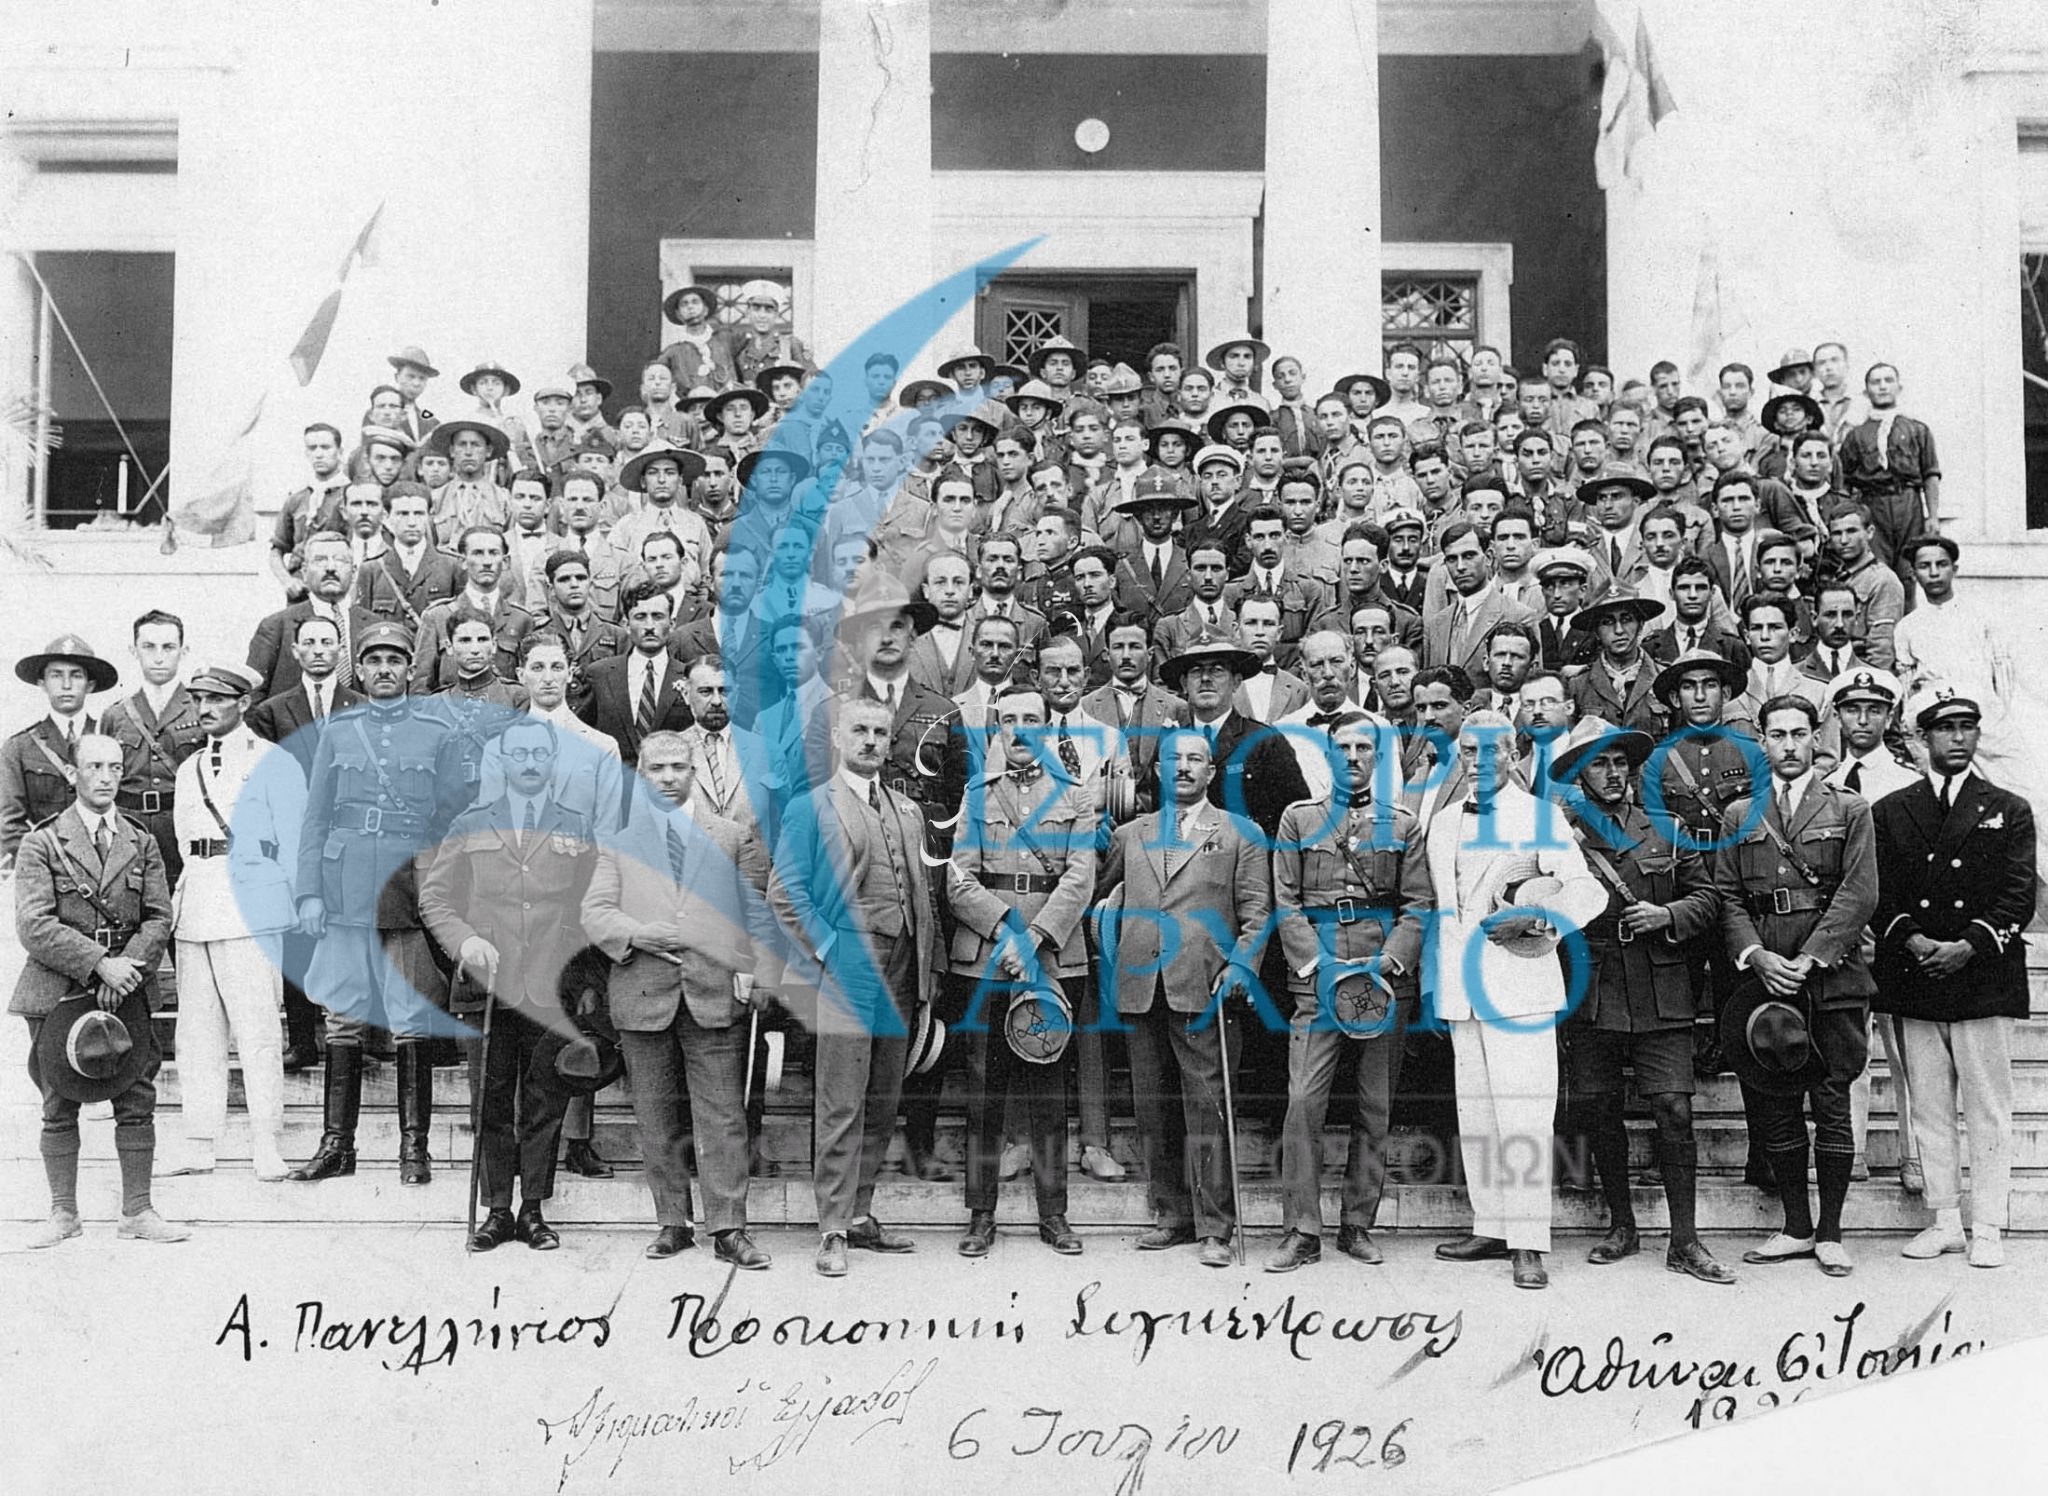 Αναμνηστική φωτογραφία κατά το πέρας της 1ης πανελλήνιας προσκοπική συγκέντρωσης στην Αθήνα. Στην φωτογραφία μετάξυ άλλων διακρίνονται ο Αντ. Μπενάκης και ο Η. Ησαϊας.